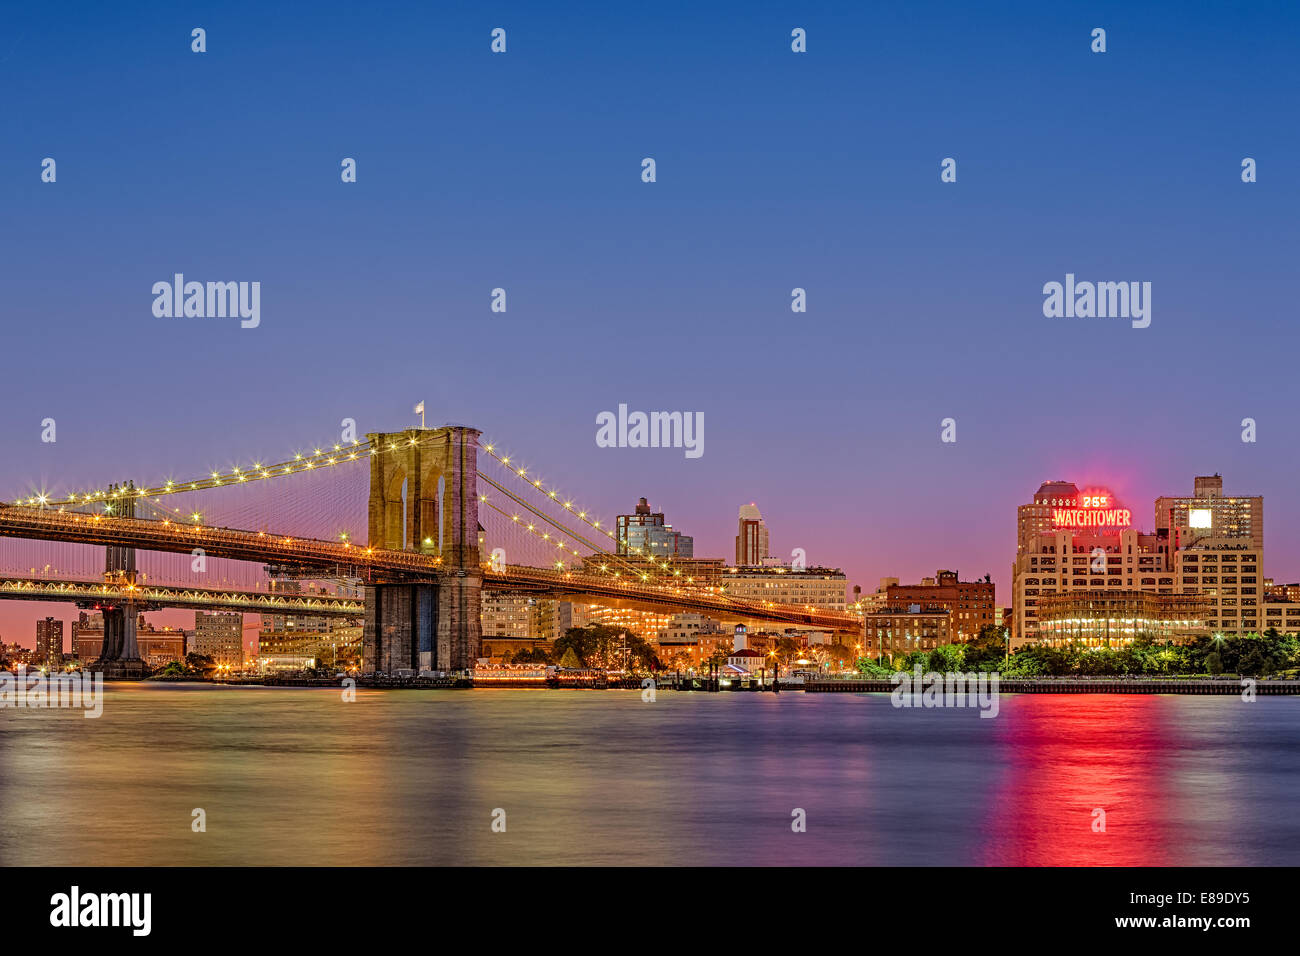 Le Pont de Brooklyn, Dumbo, Brooklyn Bridge Park et la tour de guet des capacités pendant le crépuscule. Vu du port maritime de South Street dans le lower Manhattan, New York City. Banque D'Images